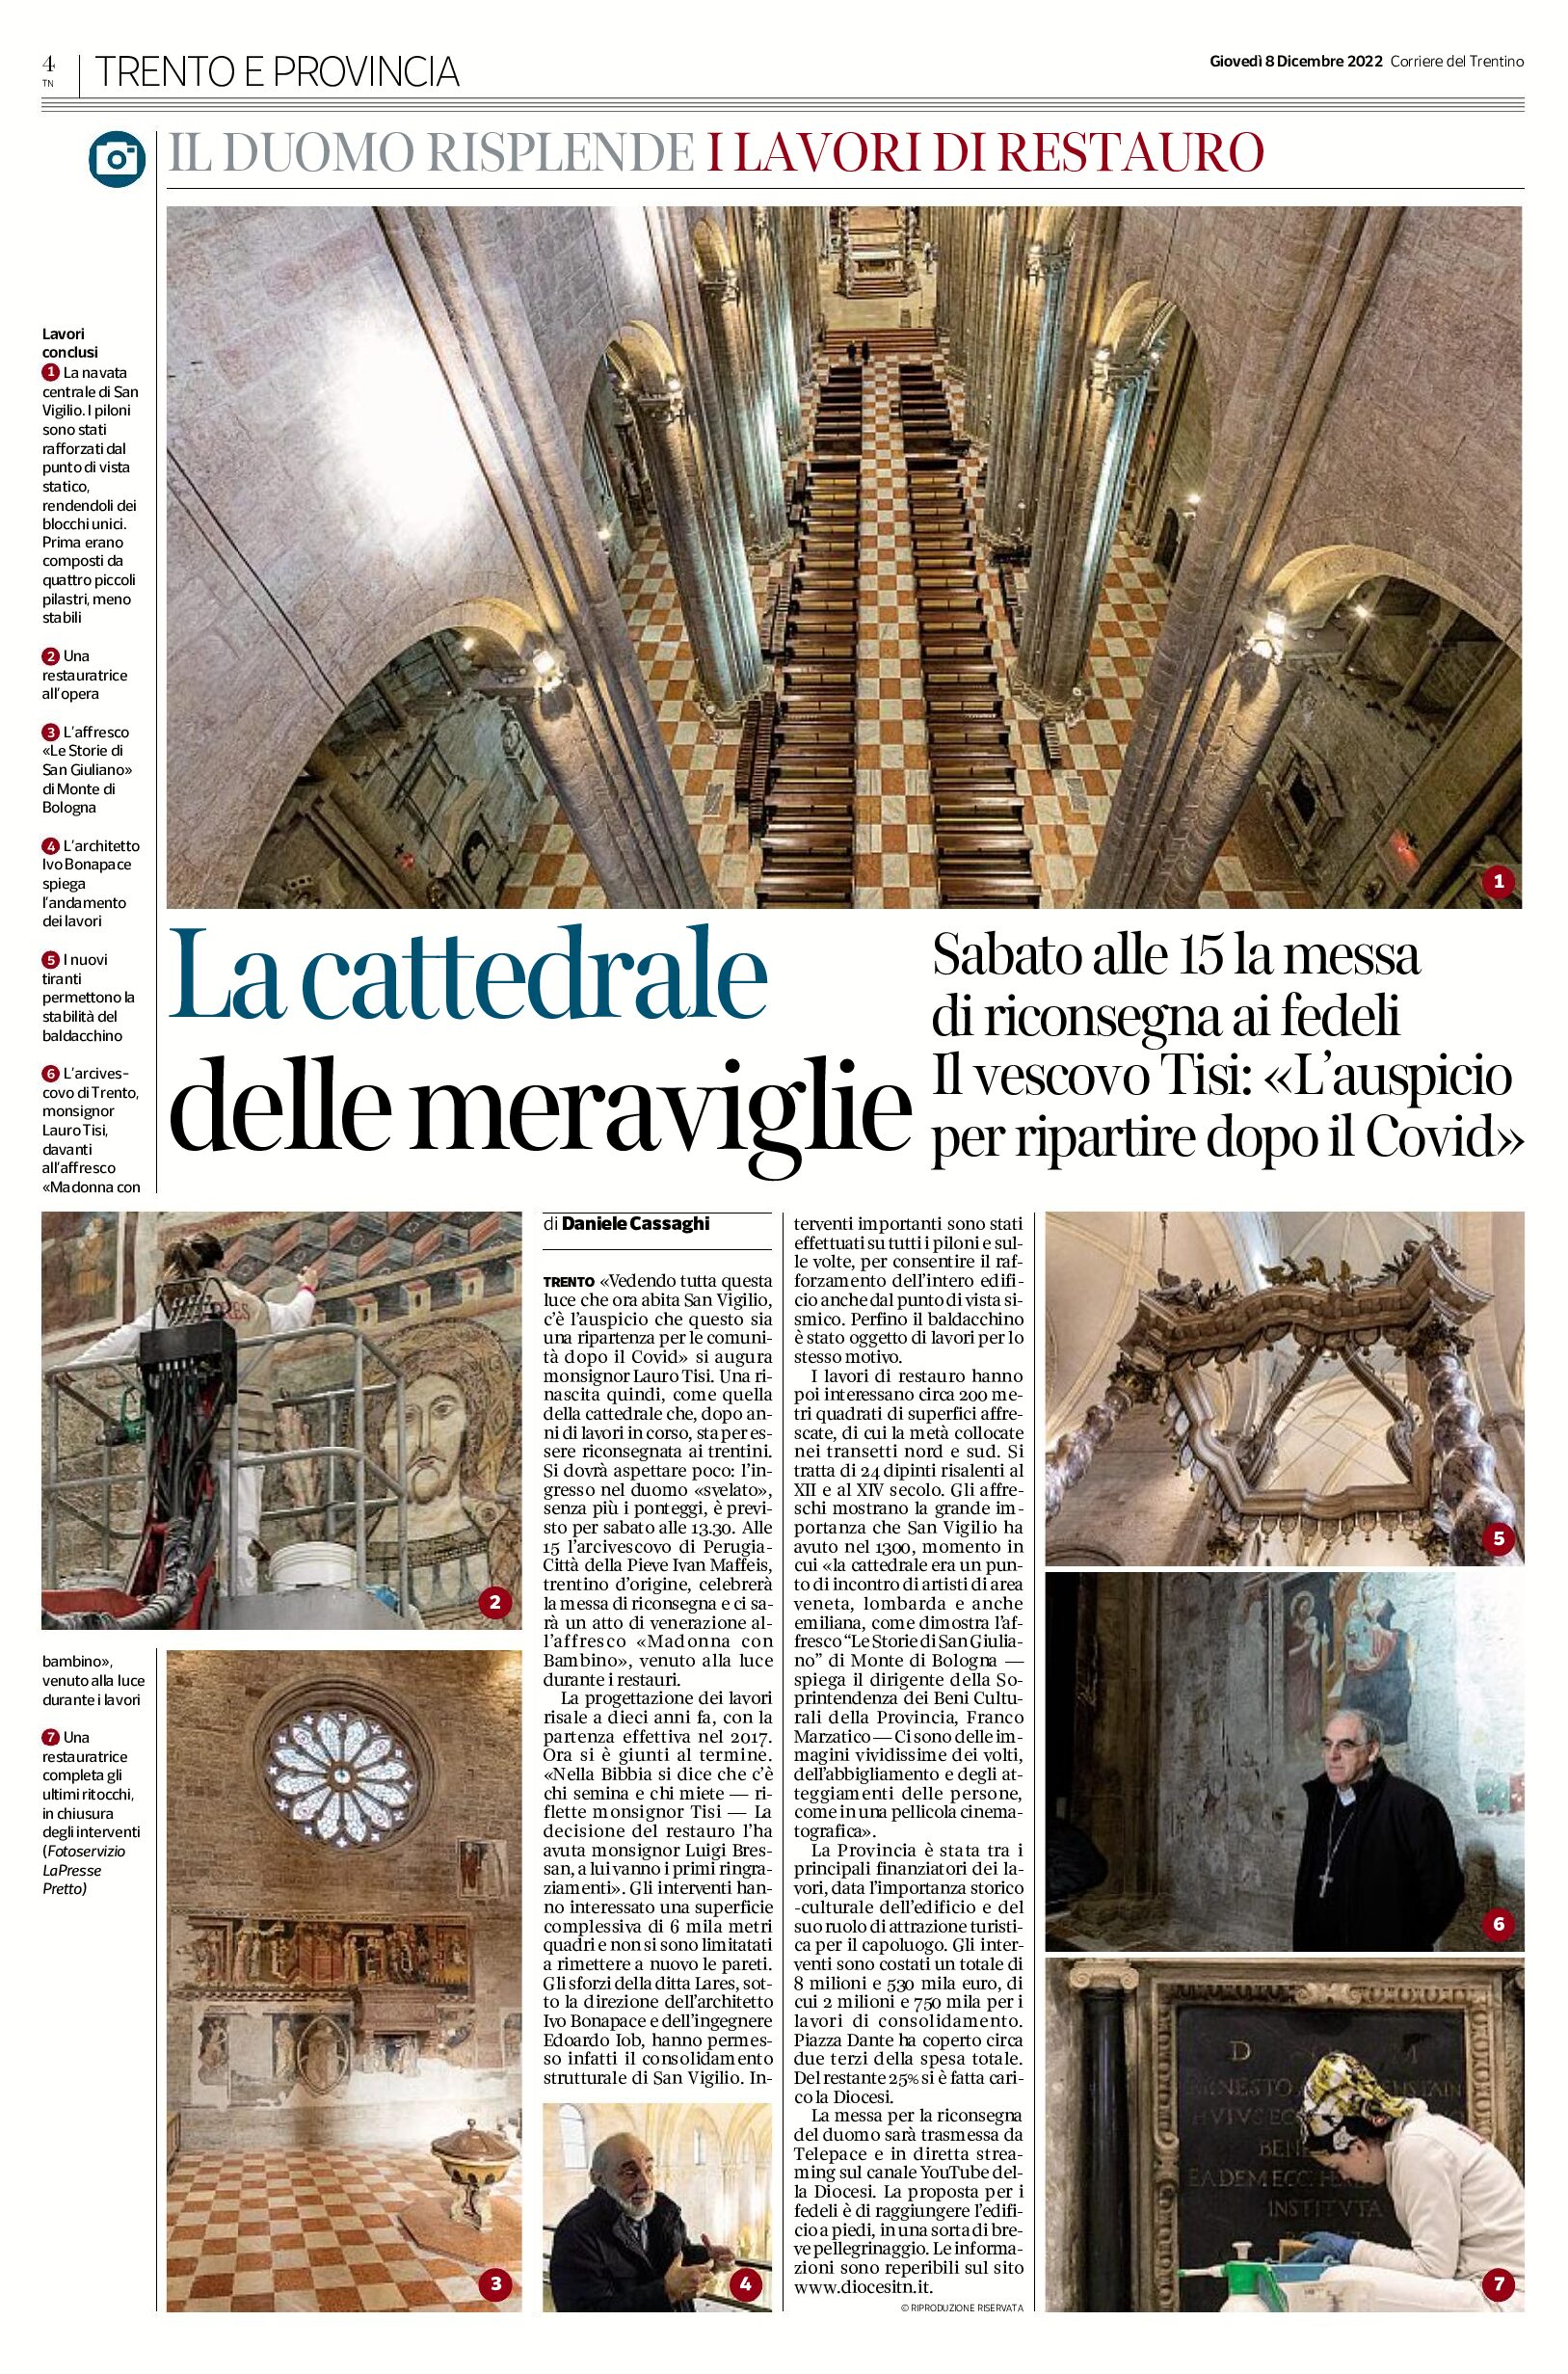 Trento: il Duomo è restaurato